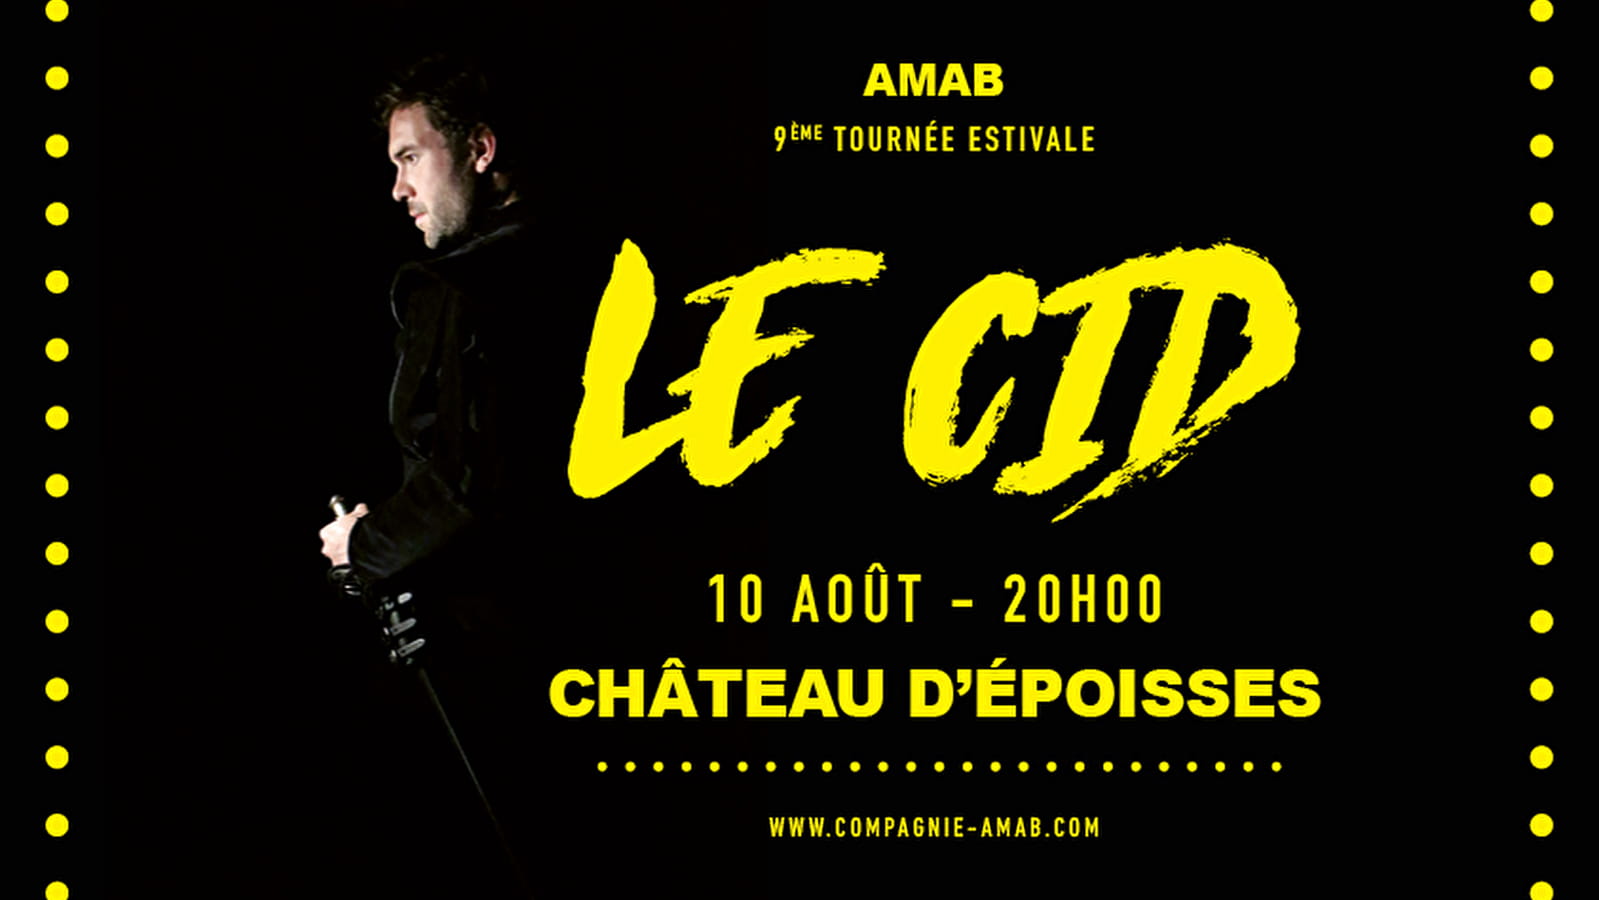  Théâtre de plein air au Château d'Époisses - Cie AMAB